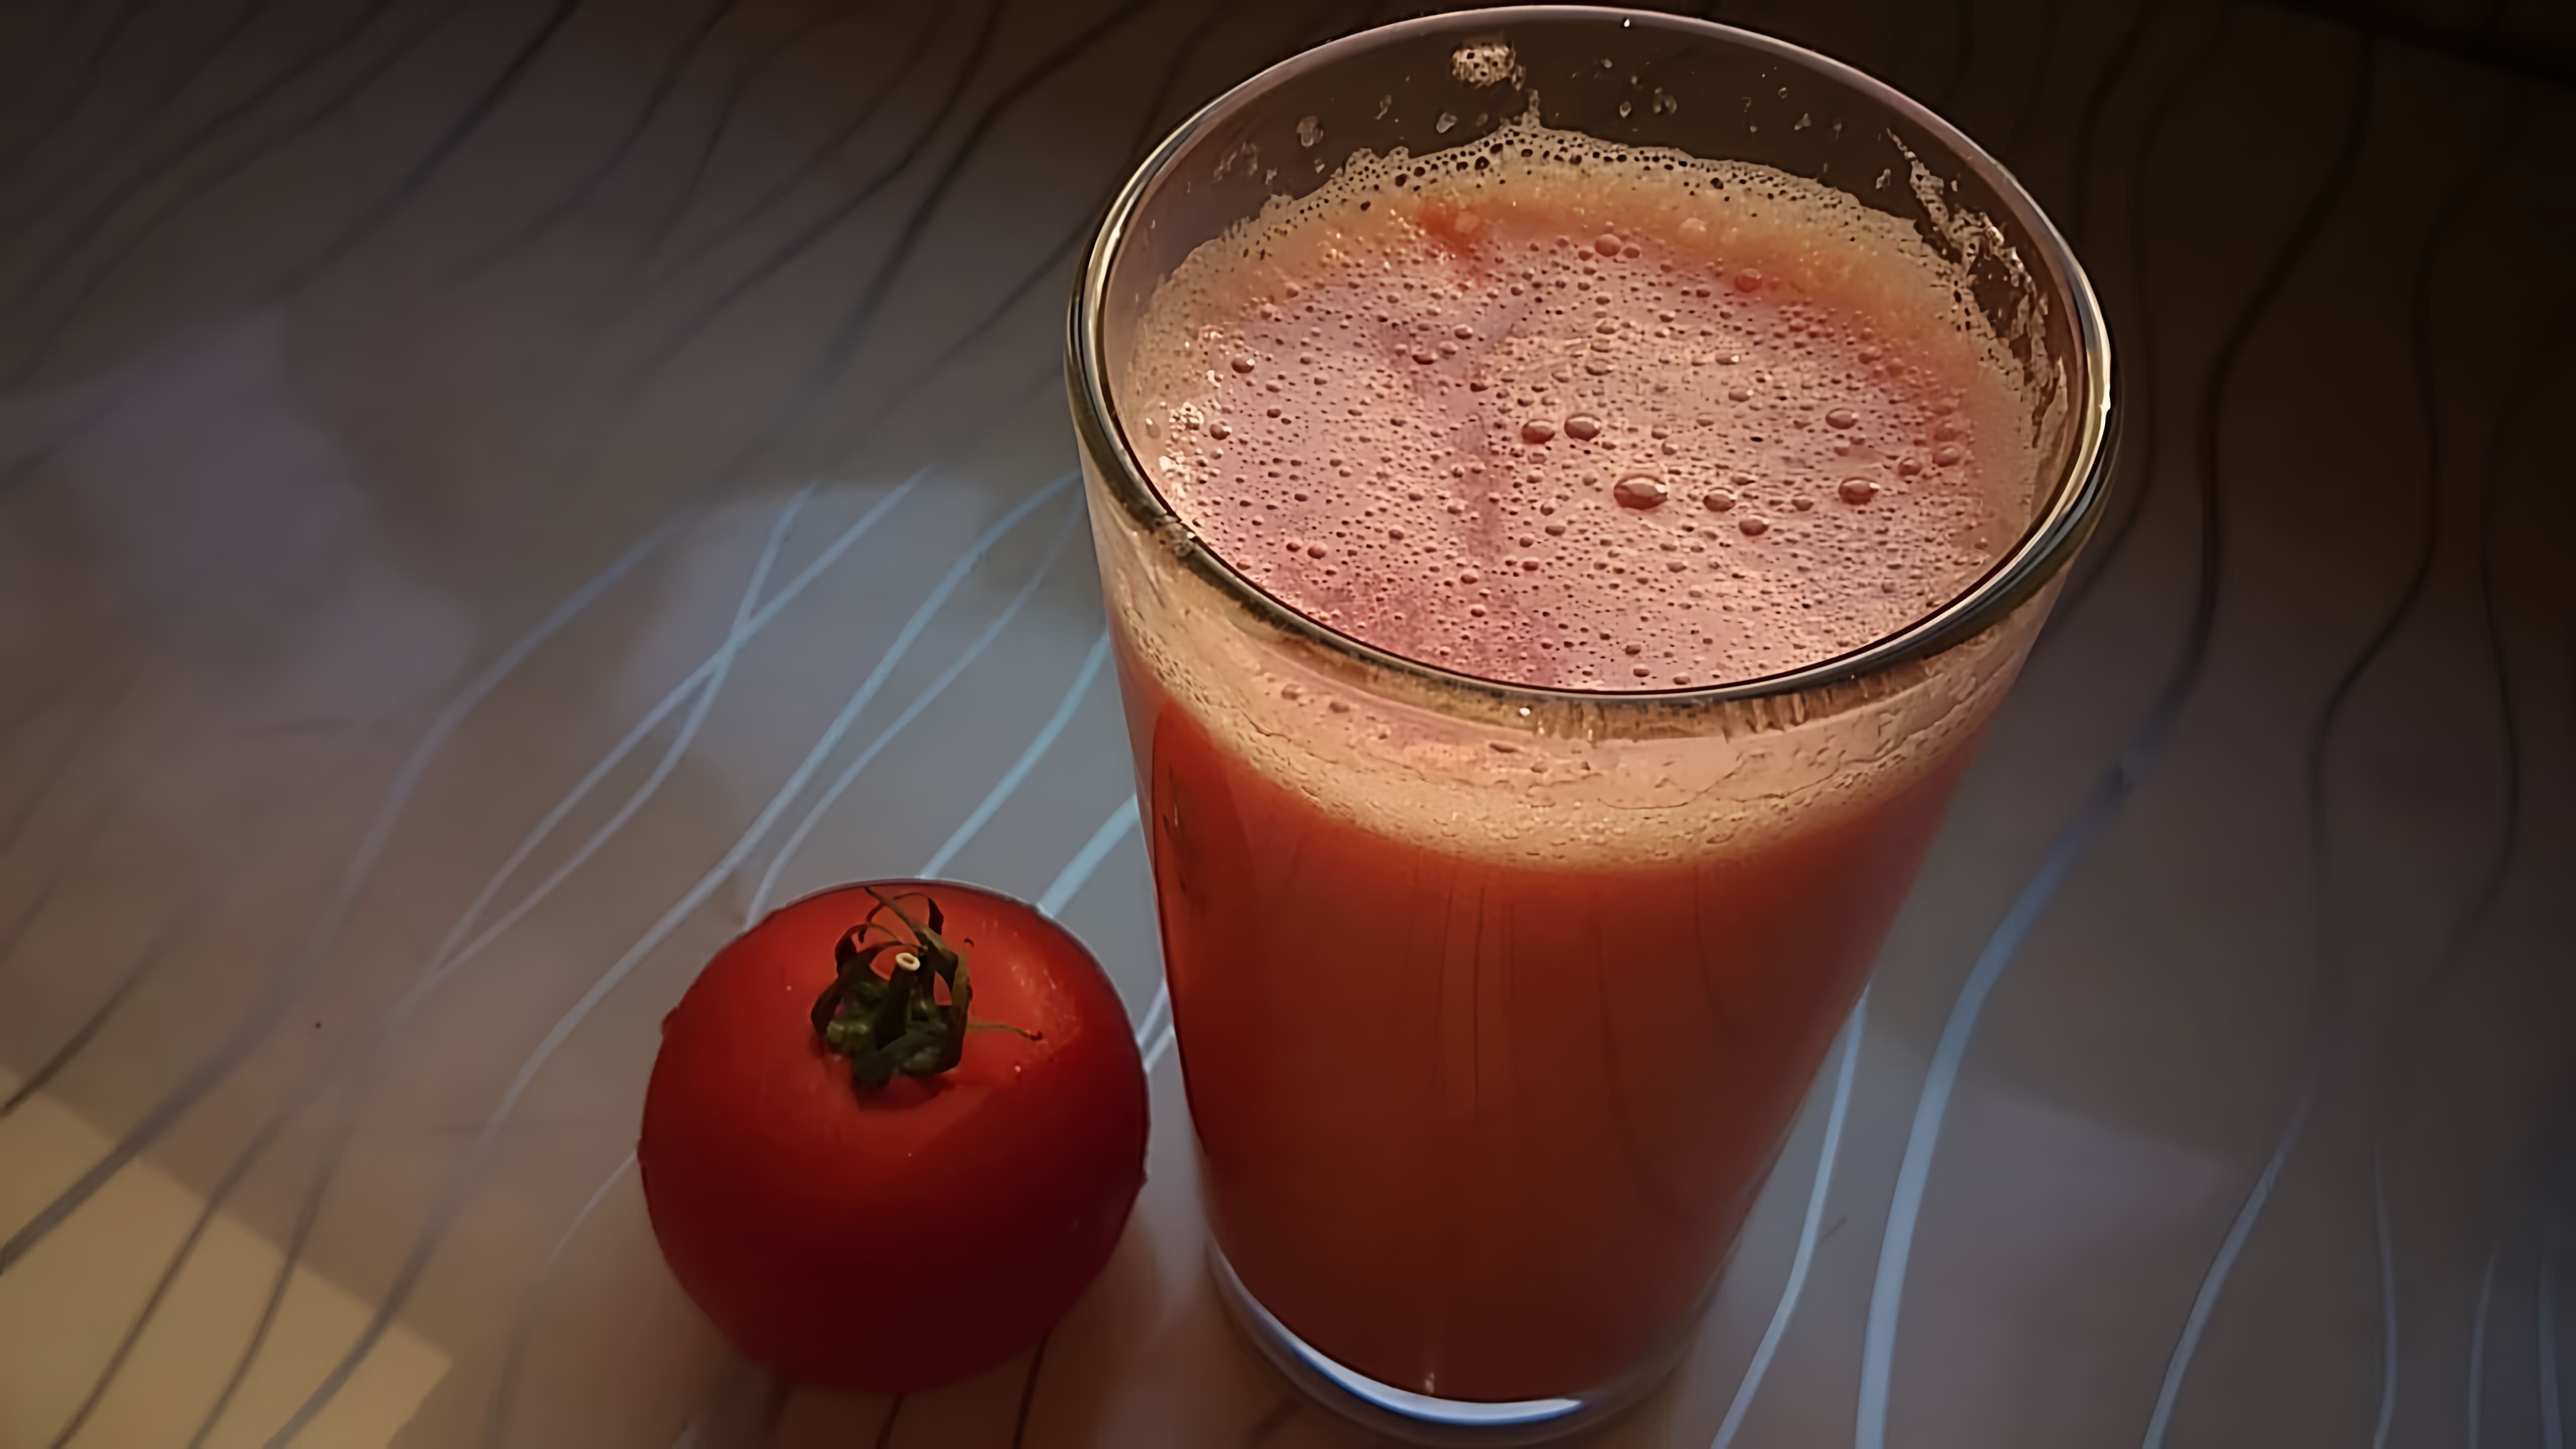 В этом видео демонстрируется процесс приготовления 100% натурального томатного сока в домашних условиях